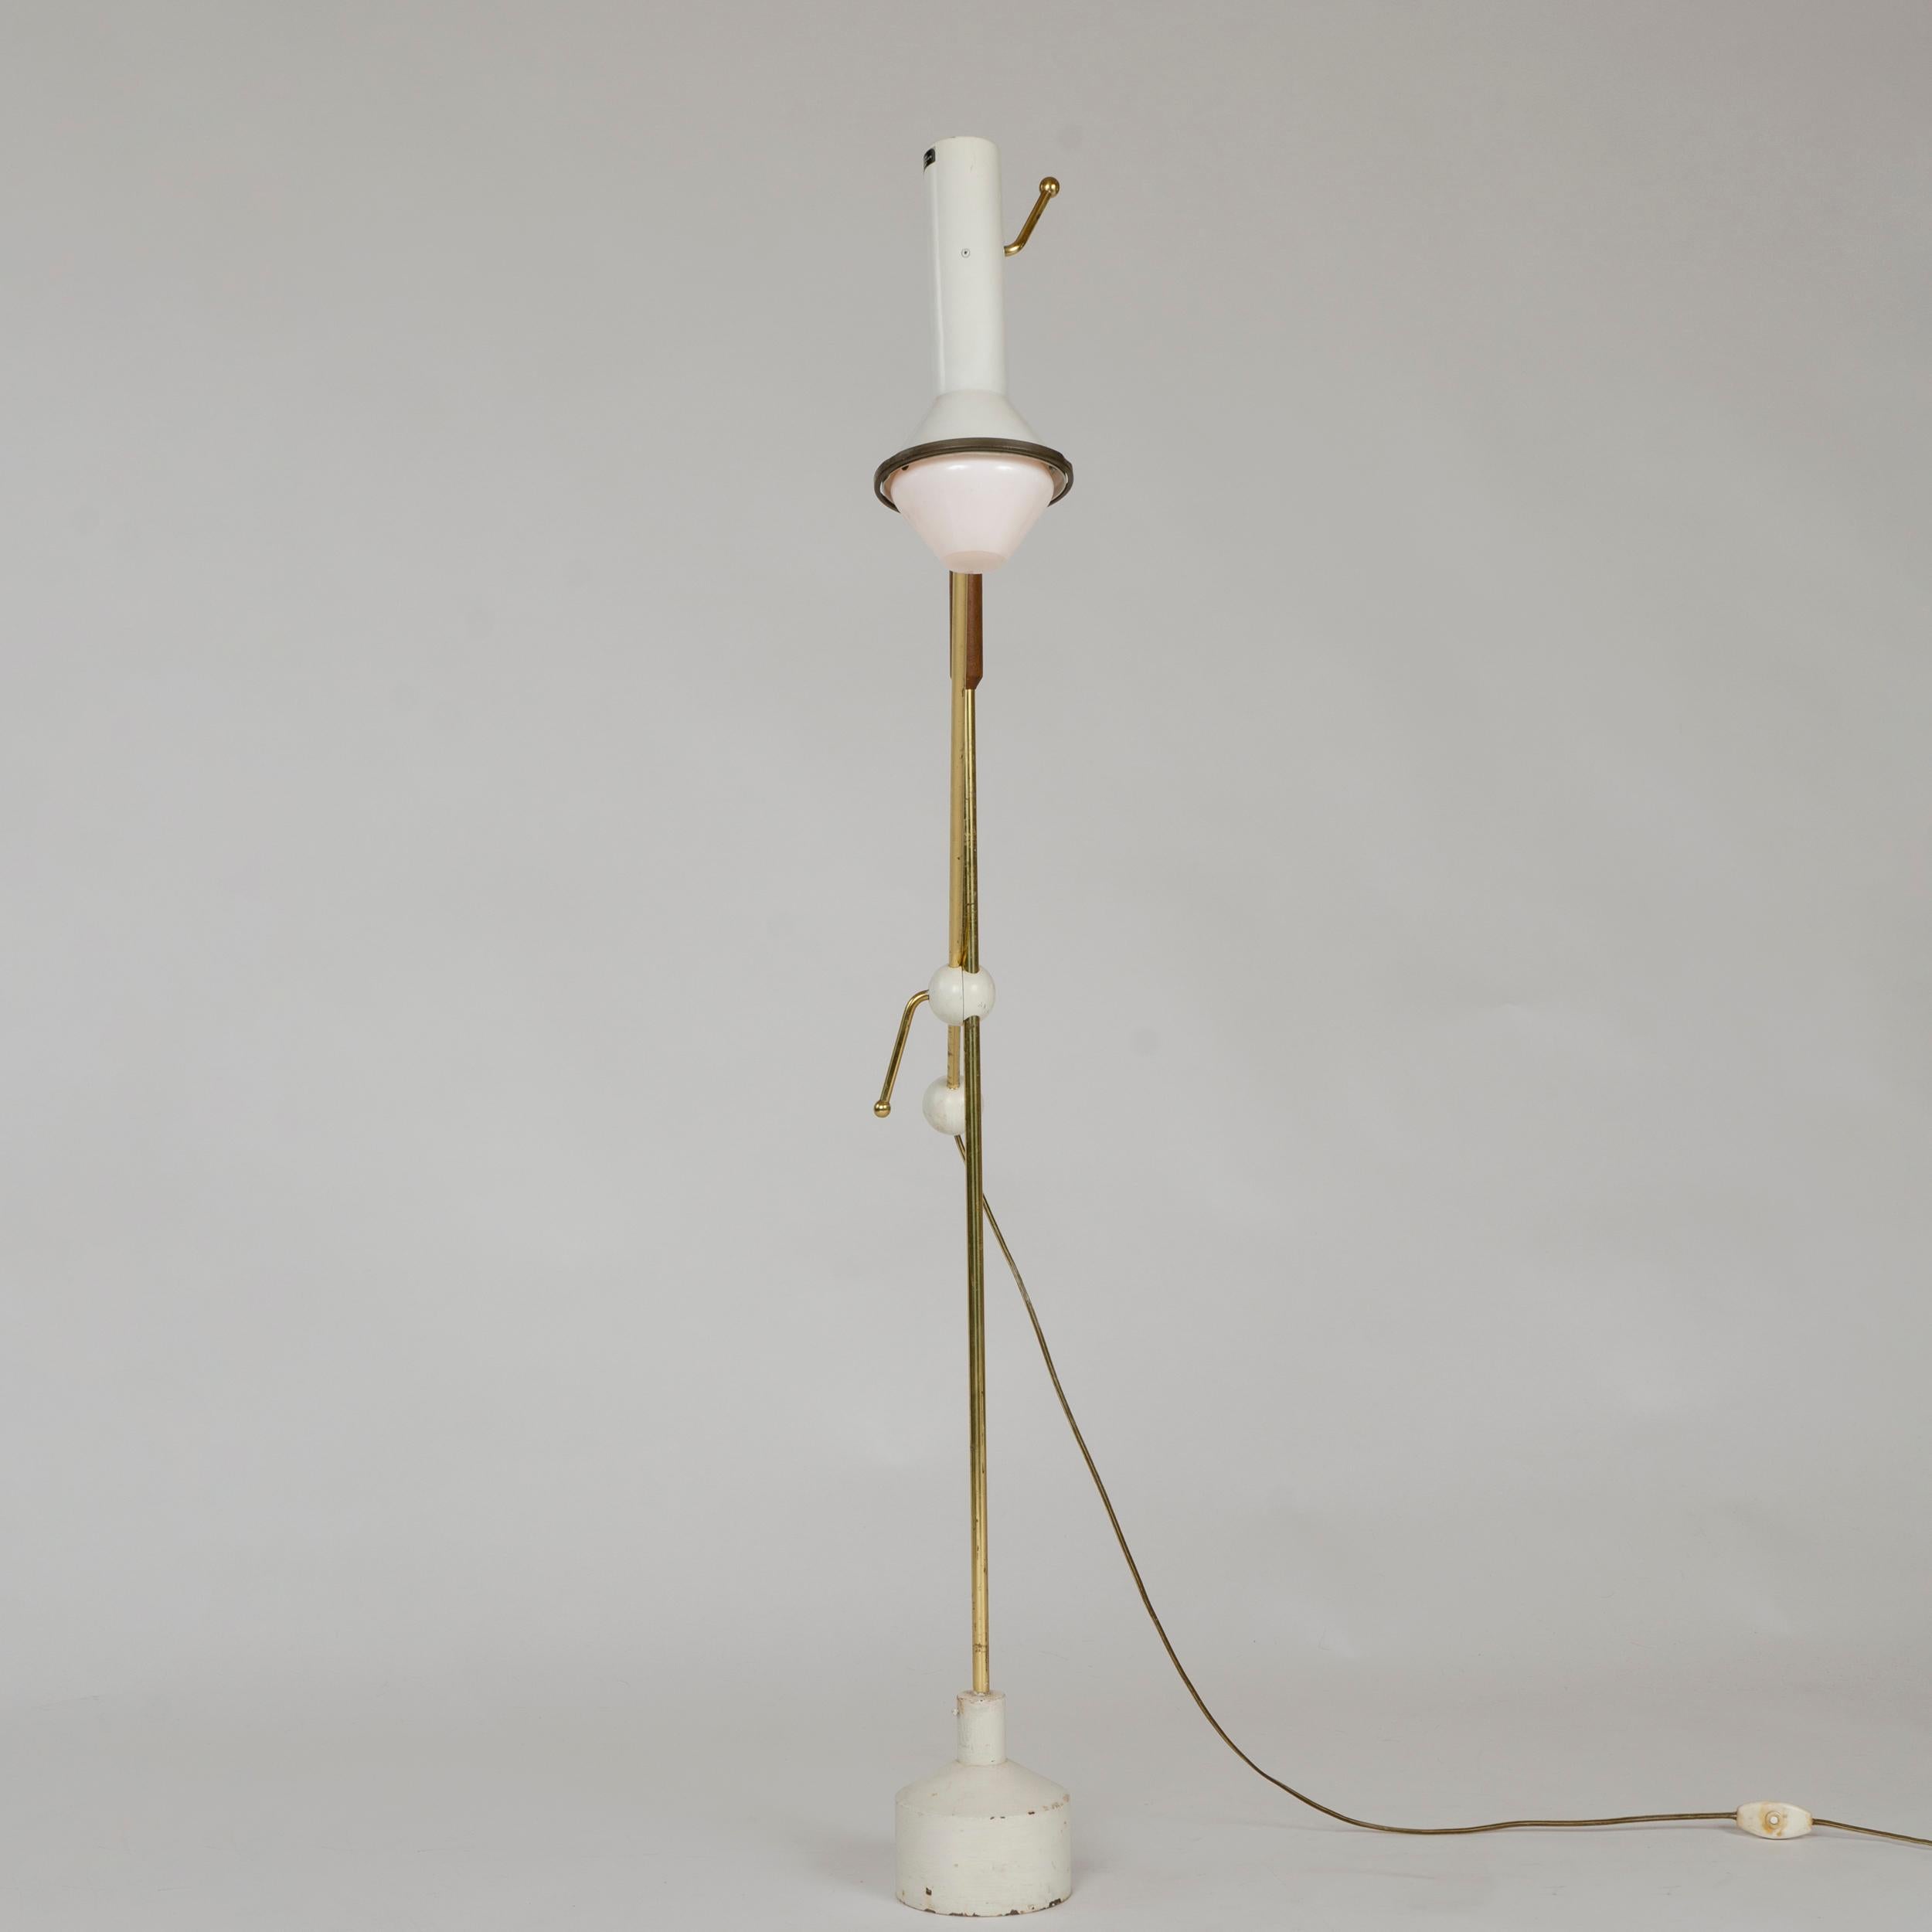 1950s Finnish Adjustable Floor Lamp by Tapio Wirkkala for Idman Oy 1